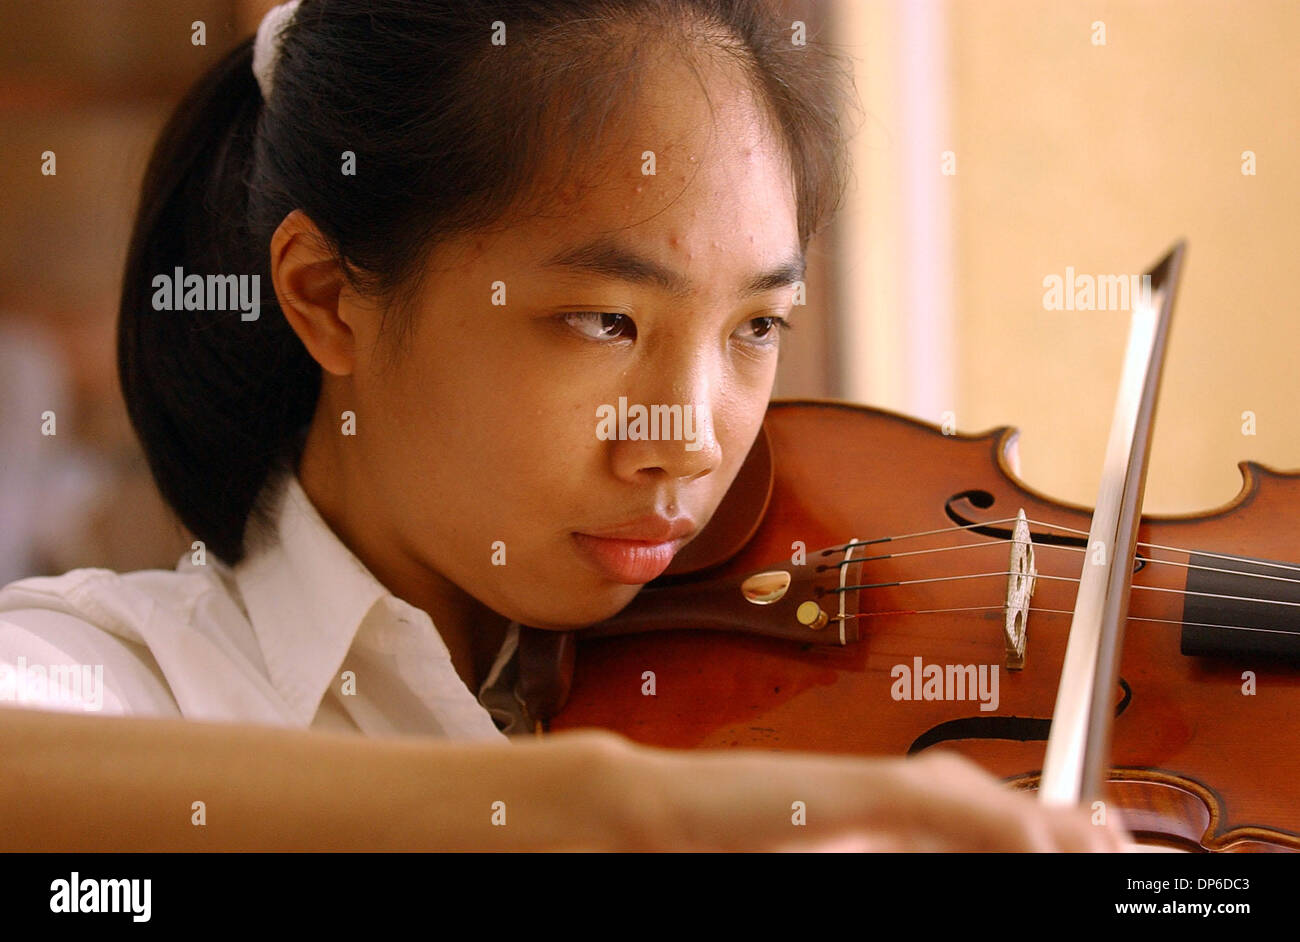 Oct 09, 2006 ; San Antonio, TX, USA ; Nancy Zhou, 13 ans, s'affronteront  dans un concours international de violon en Pologne. Elle est la seule de  la violoniste États-Unis à y